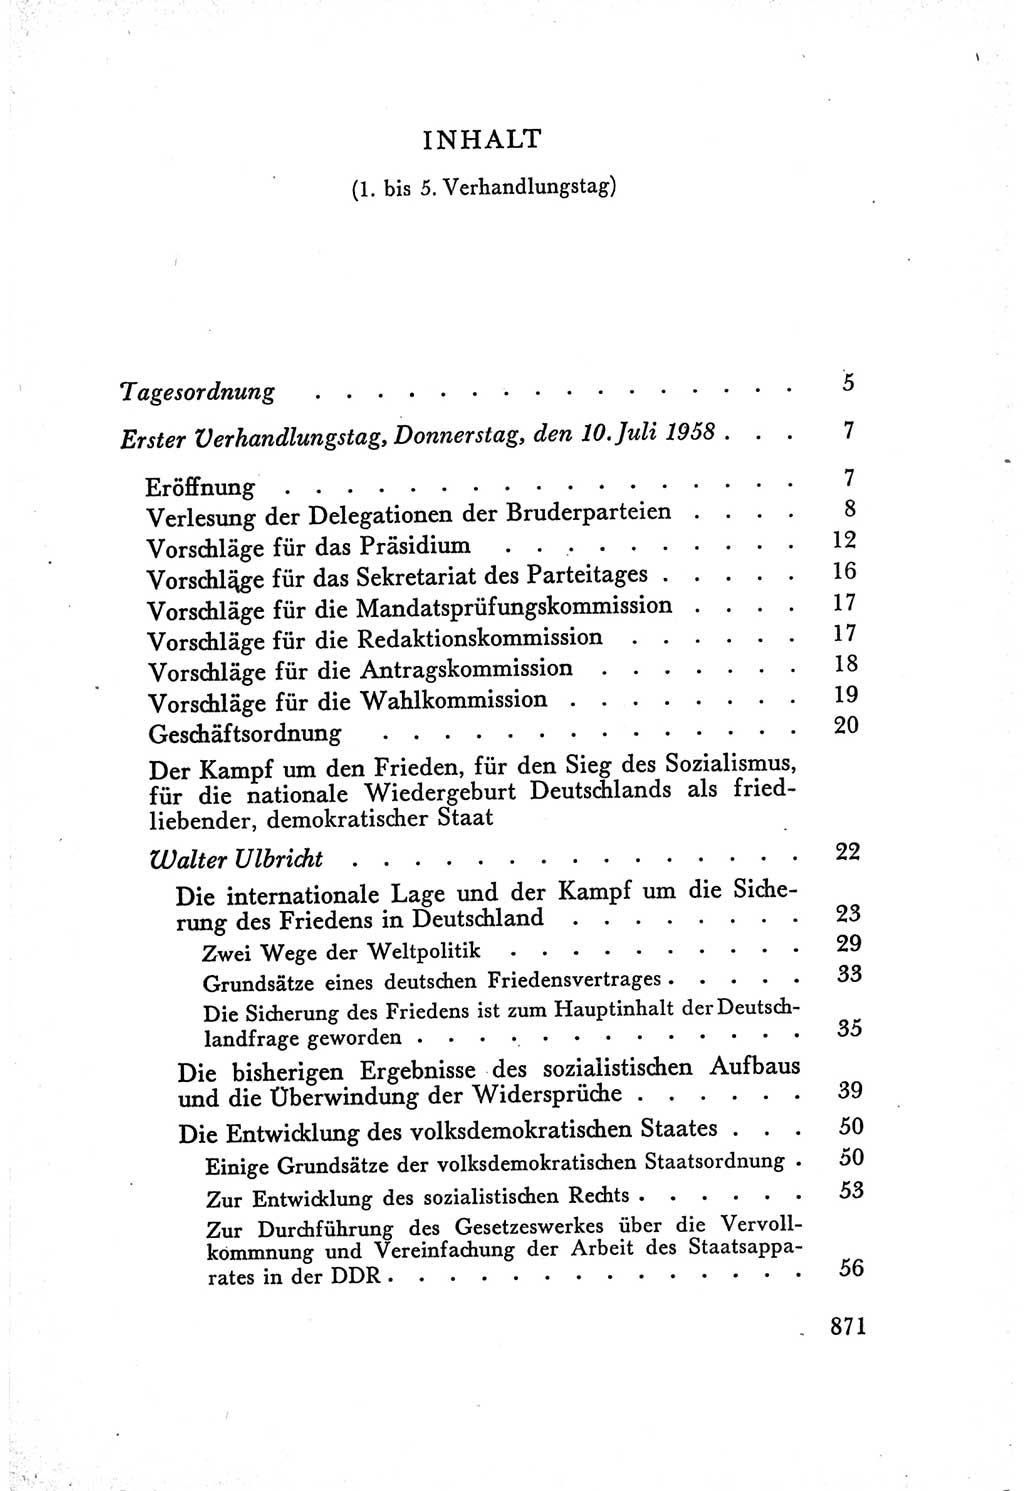 Protokoll der Verhandlungen des Ⅴ. Parteitages der Sozialistischen Einheitspartei Deutschlands (SED) [Deutsche Demokratische Republik (DDR)] 1958, Seite 871